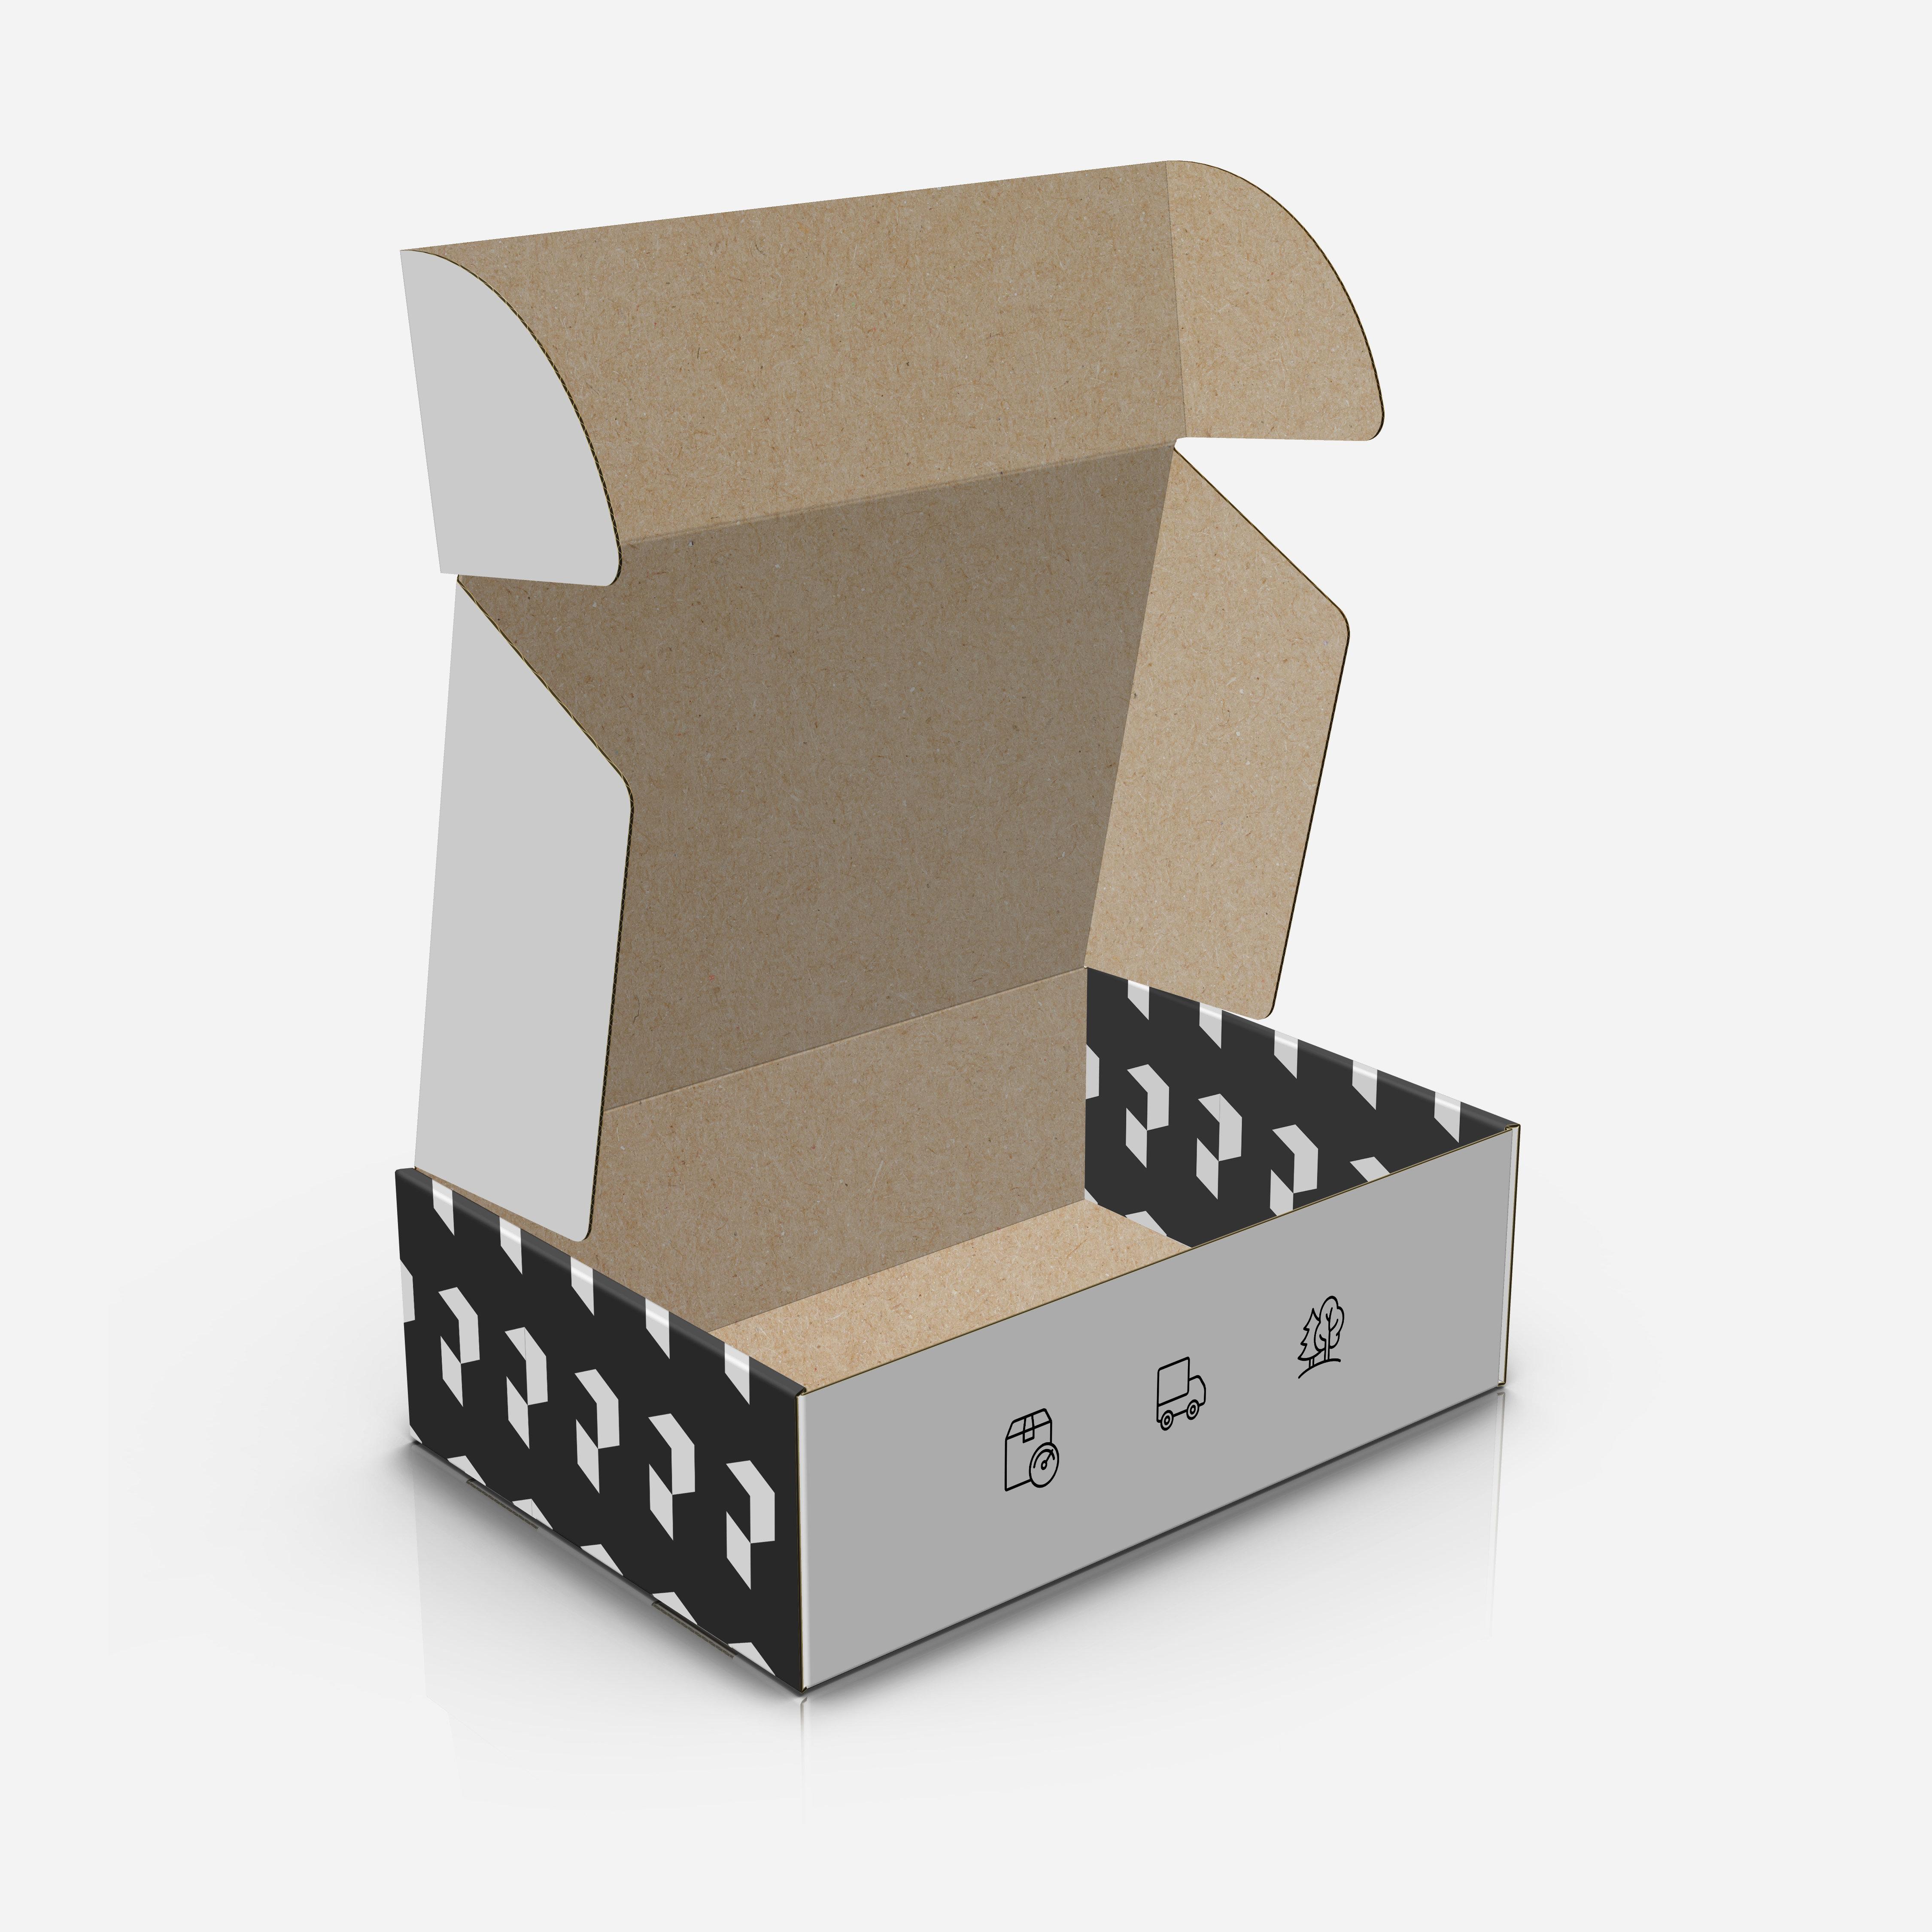 Pudełko na wysyłki z logo - opakowanie e-commerce z białej tektury falistej.